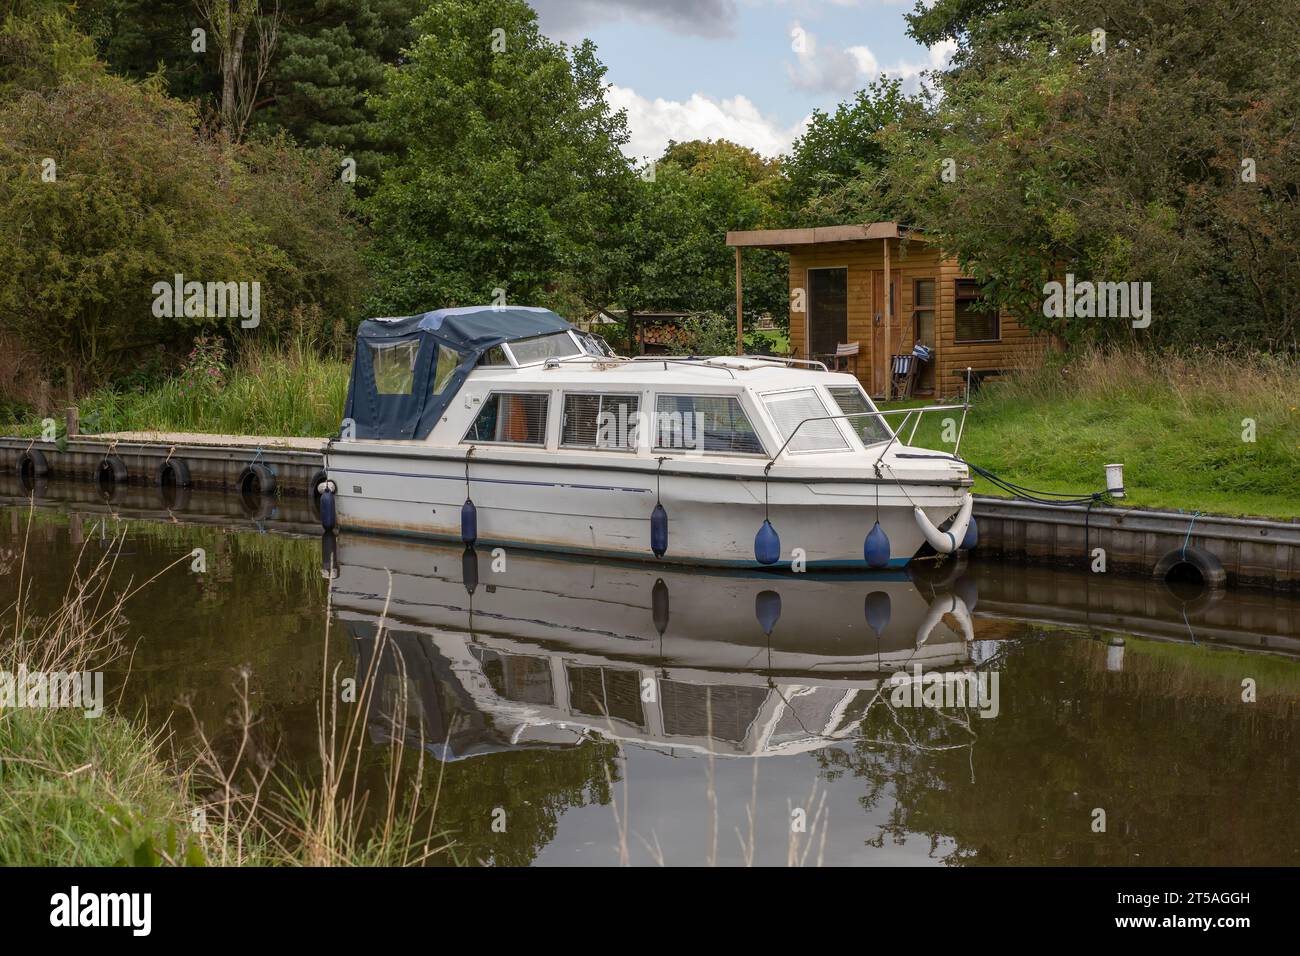 Una stretta barca è ormeggiata su un canale di fronte ad un capannone di legno. Si riflette perfettamente nell'acqua morta Foto Stock